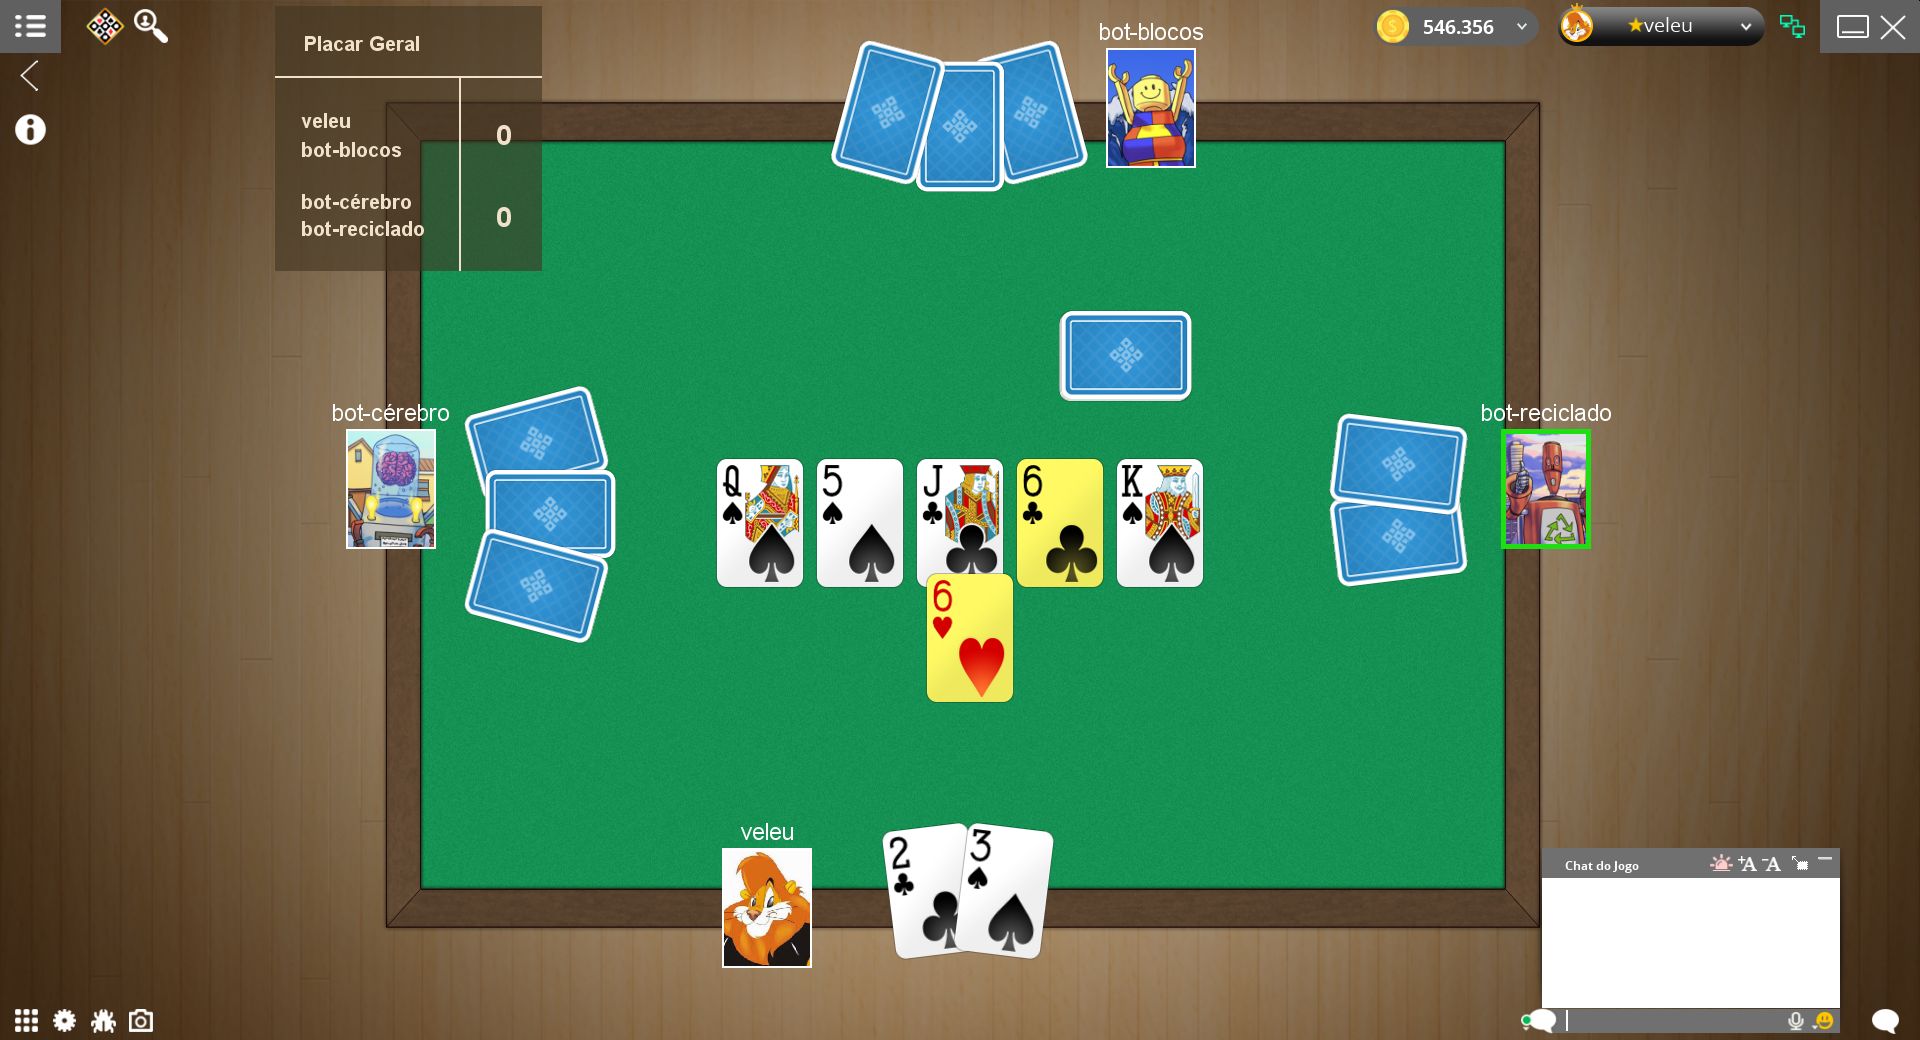 Tranca, um dos jogos de cartas que tem mais variantes de regras e adeptos  do jogo online no mundo.